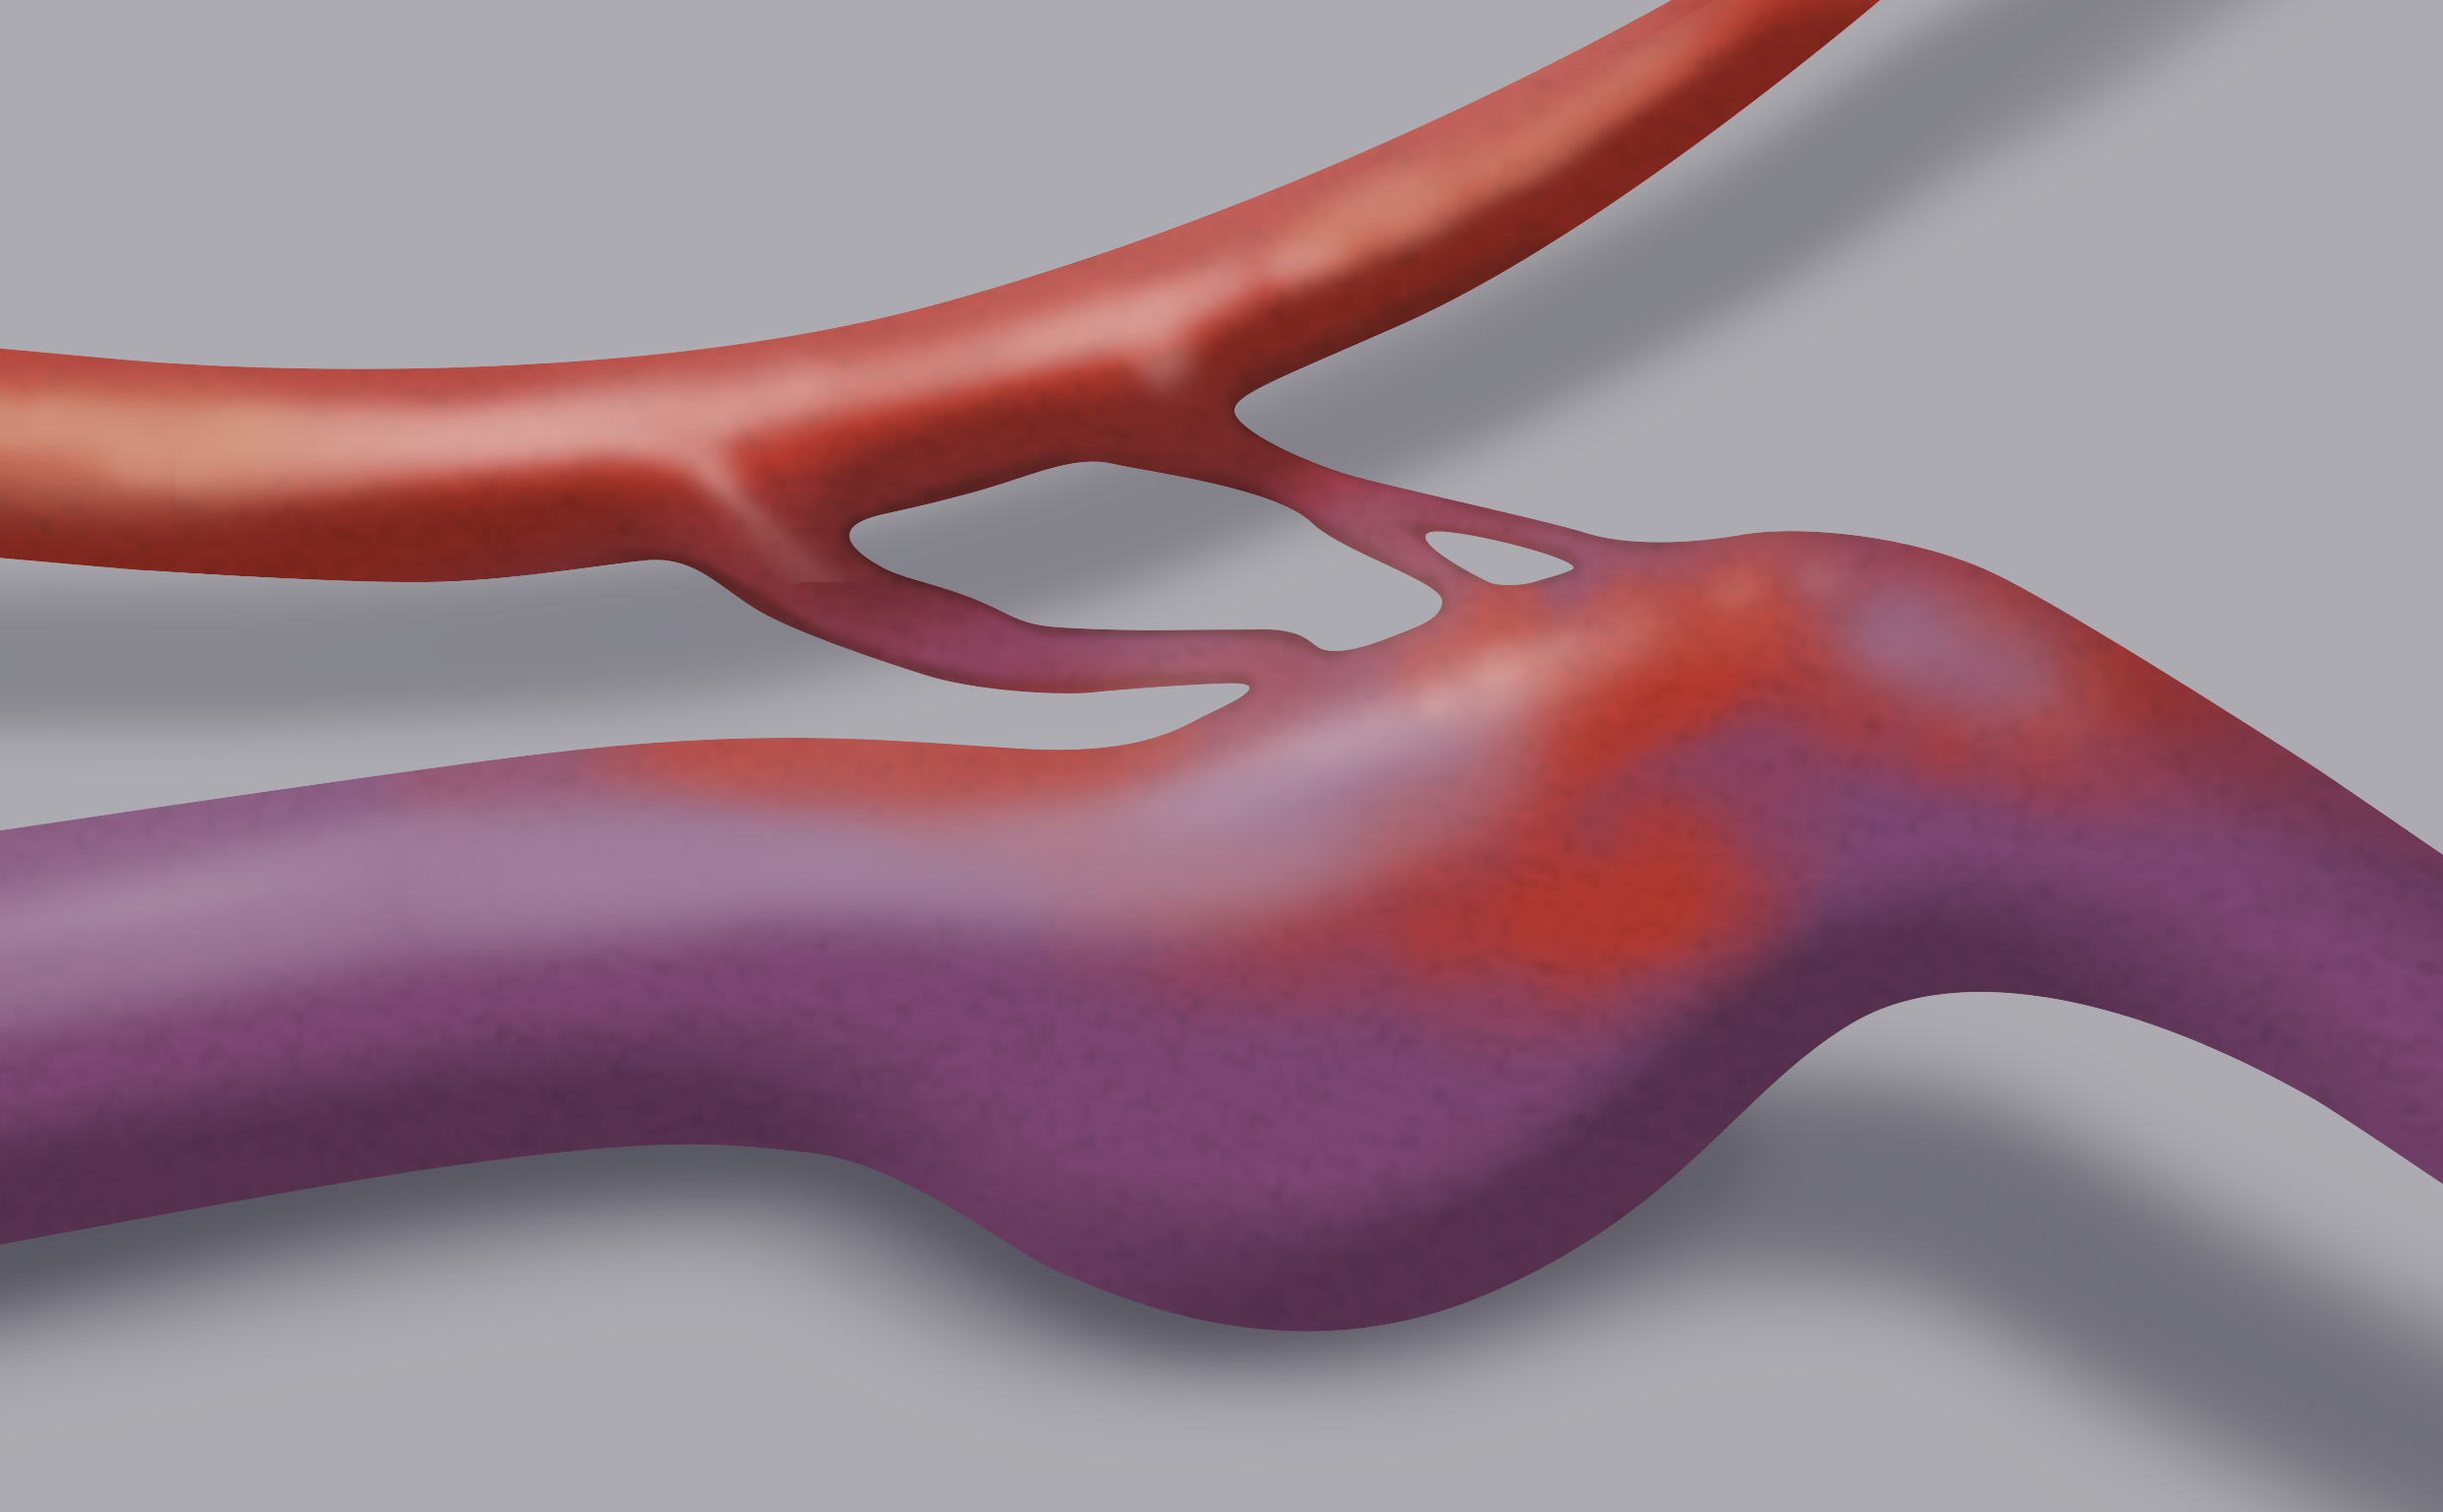 La fistola artero-venosa è una malformazione vascolare costituita da un’anomala comunicazione tra un’arteria e una vena: tale passaggio è diretto, senza interposizione di capillari. Il disegno mostra chiaramente la forte dilatazione del vaso venoso.